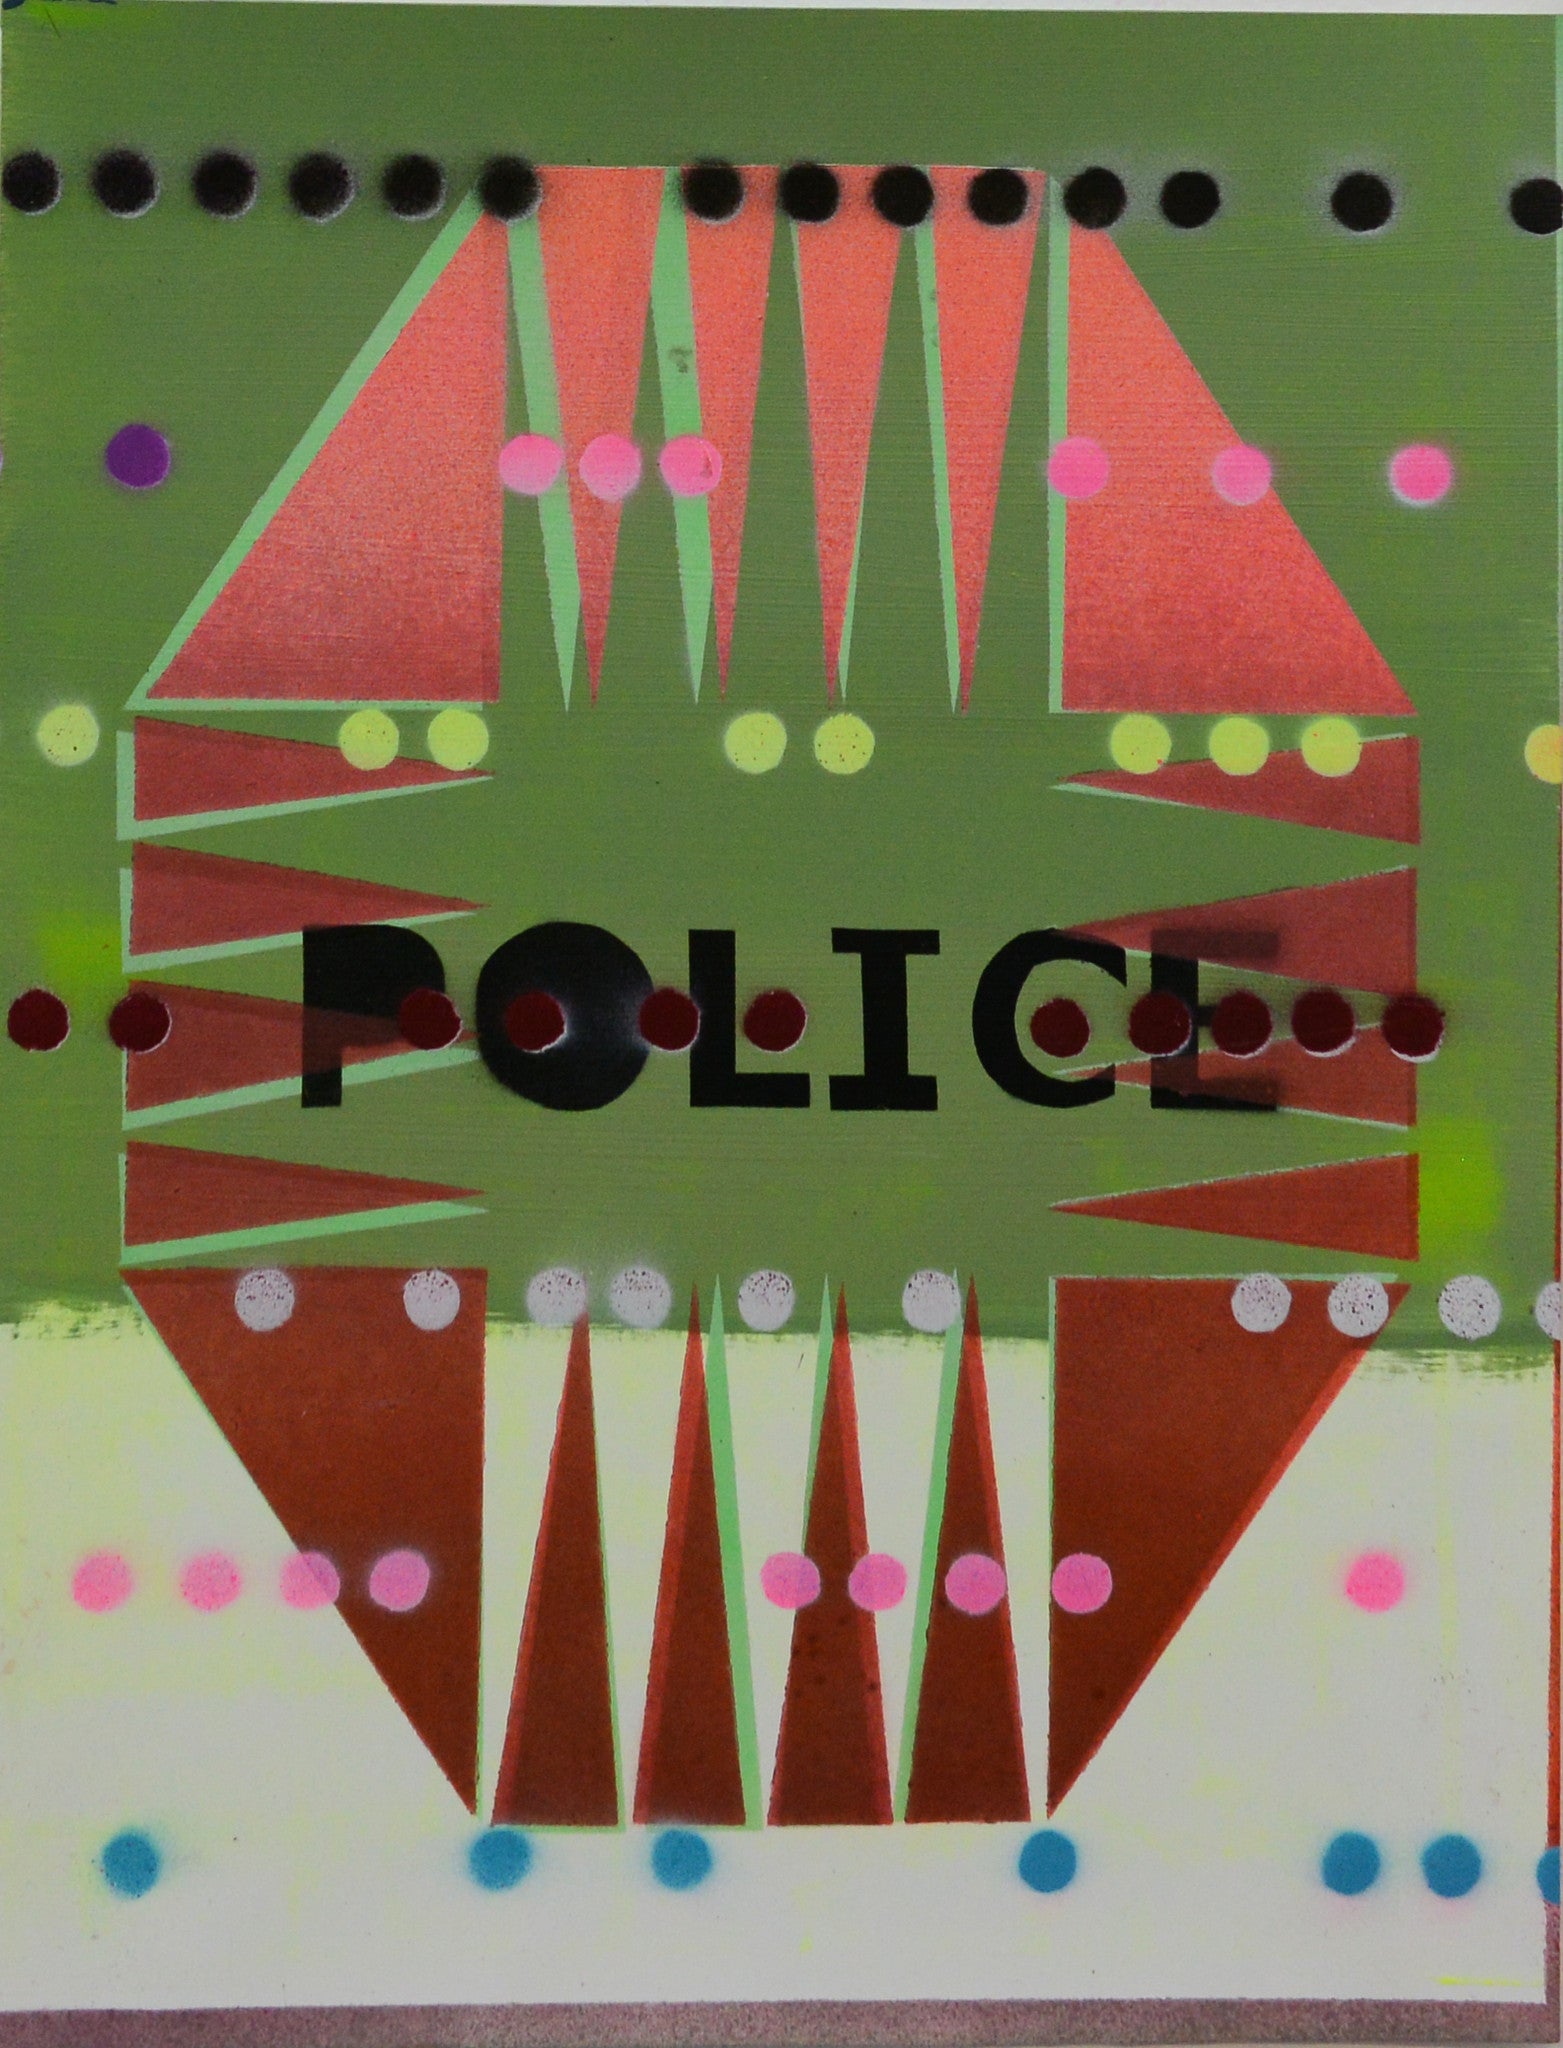 Kristen Schiele, "Police"